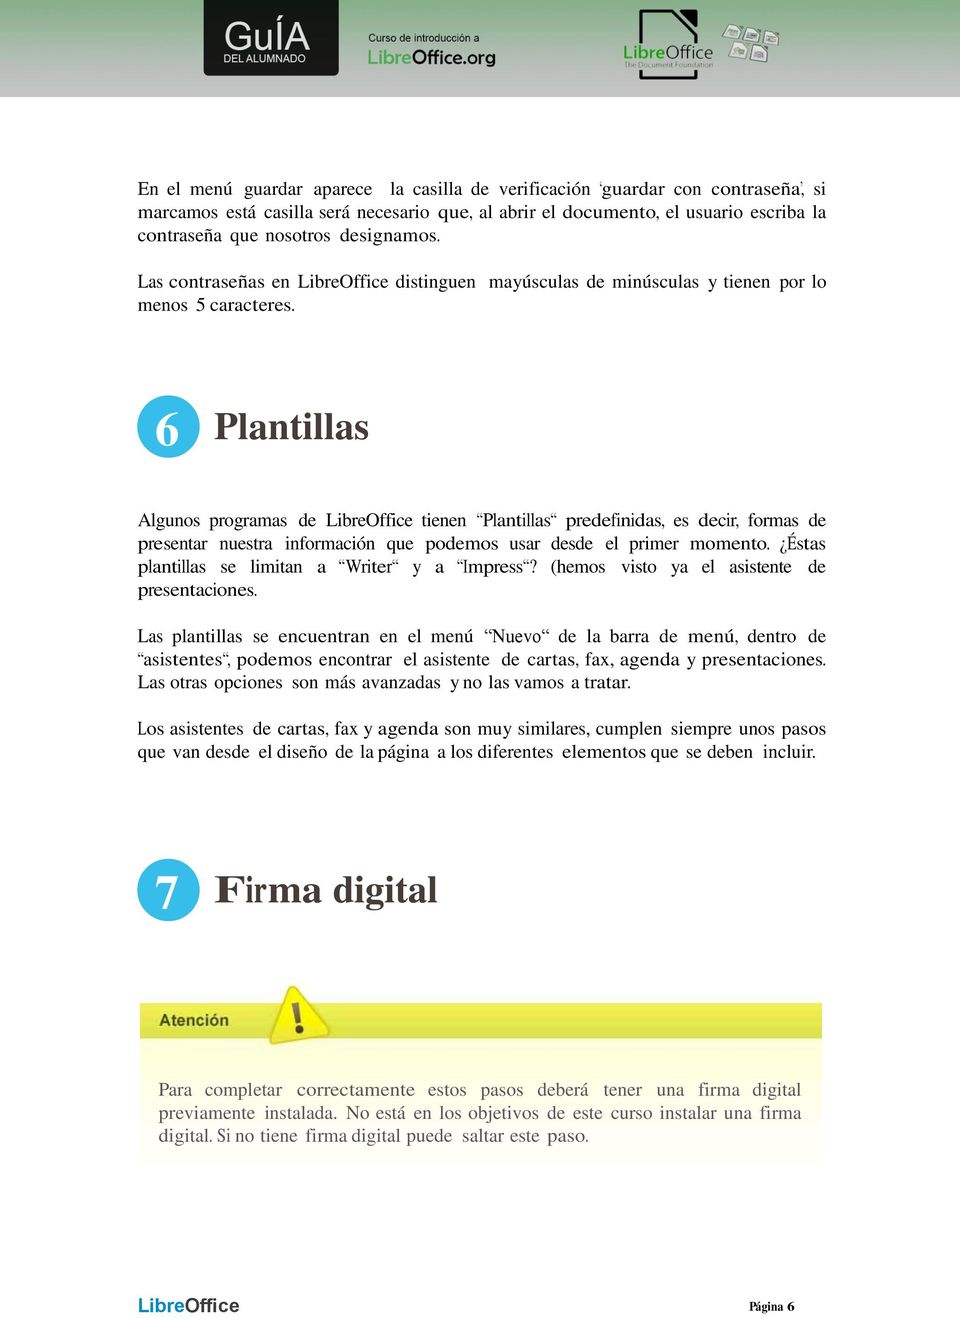 6 Plantillas Algunos programas de LibreOffice tienen Plantillas predefinidas, es decir, formas de presentar nuestra información que podemos usar desde el primer momento.